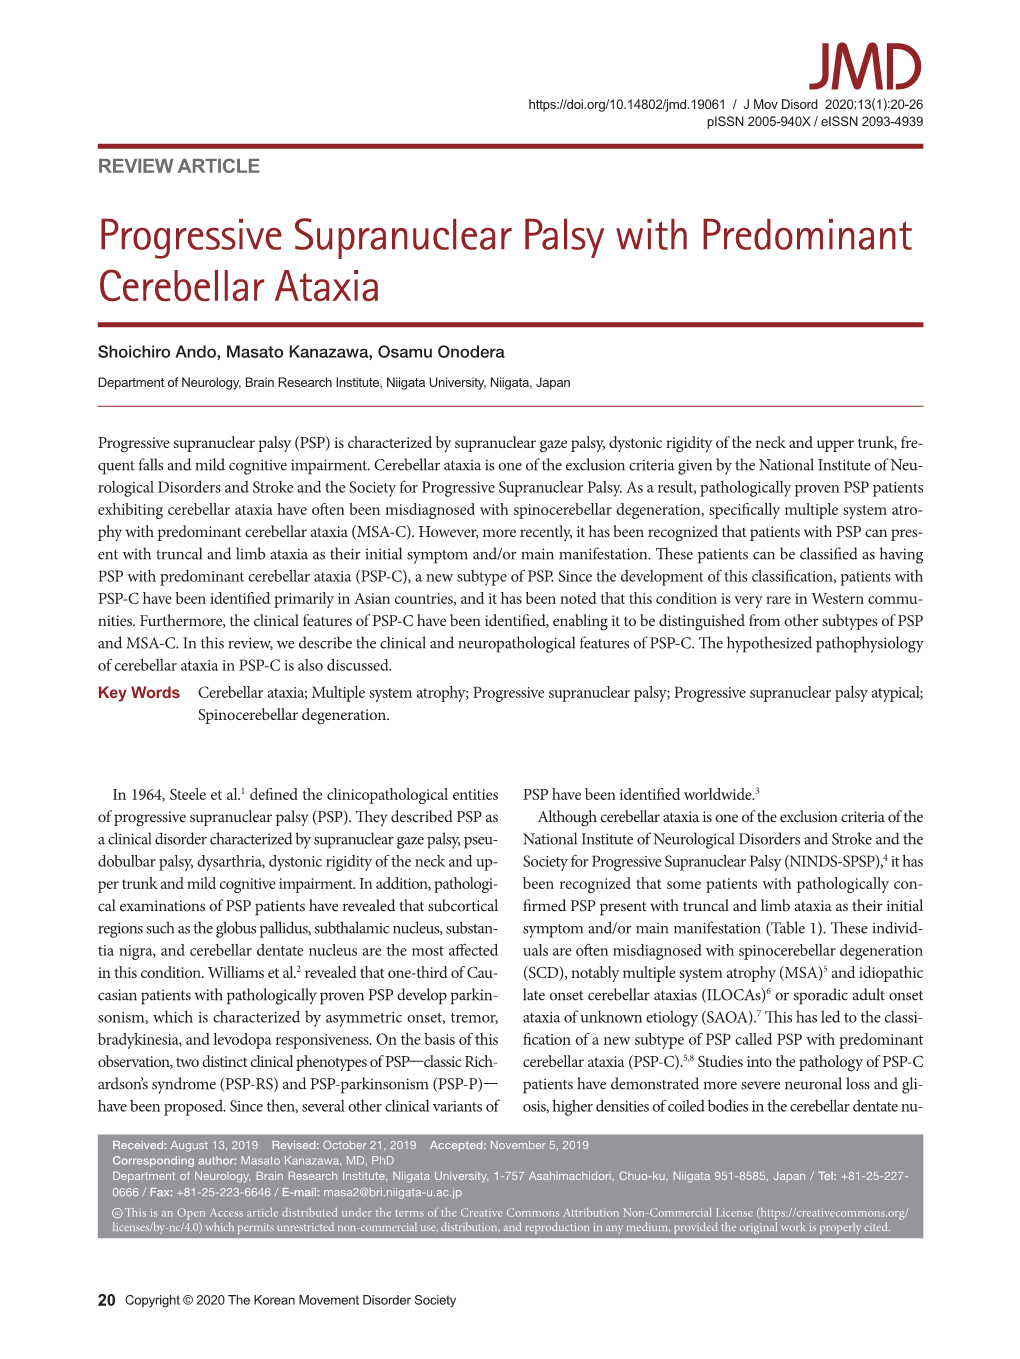 Progressive Supranuclear Palsy with Predominant Cerebellar Ataxia